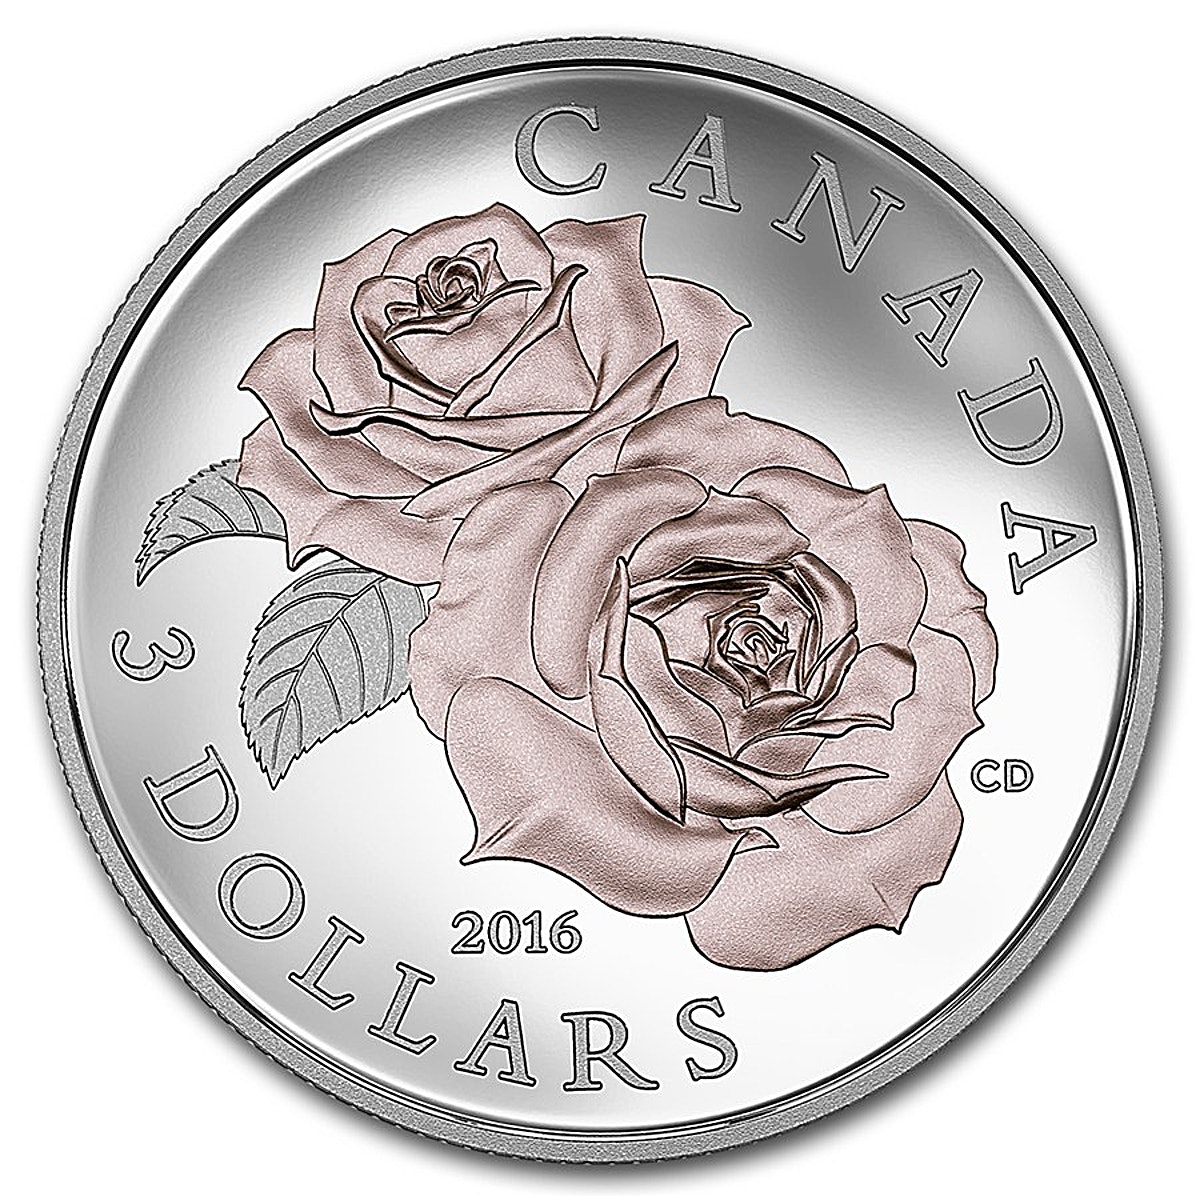 Canada Silver Queen Elizabeth Rose Coin 2016 - Proof - 1/4 oz